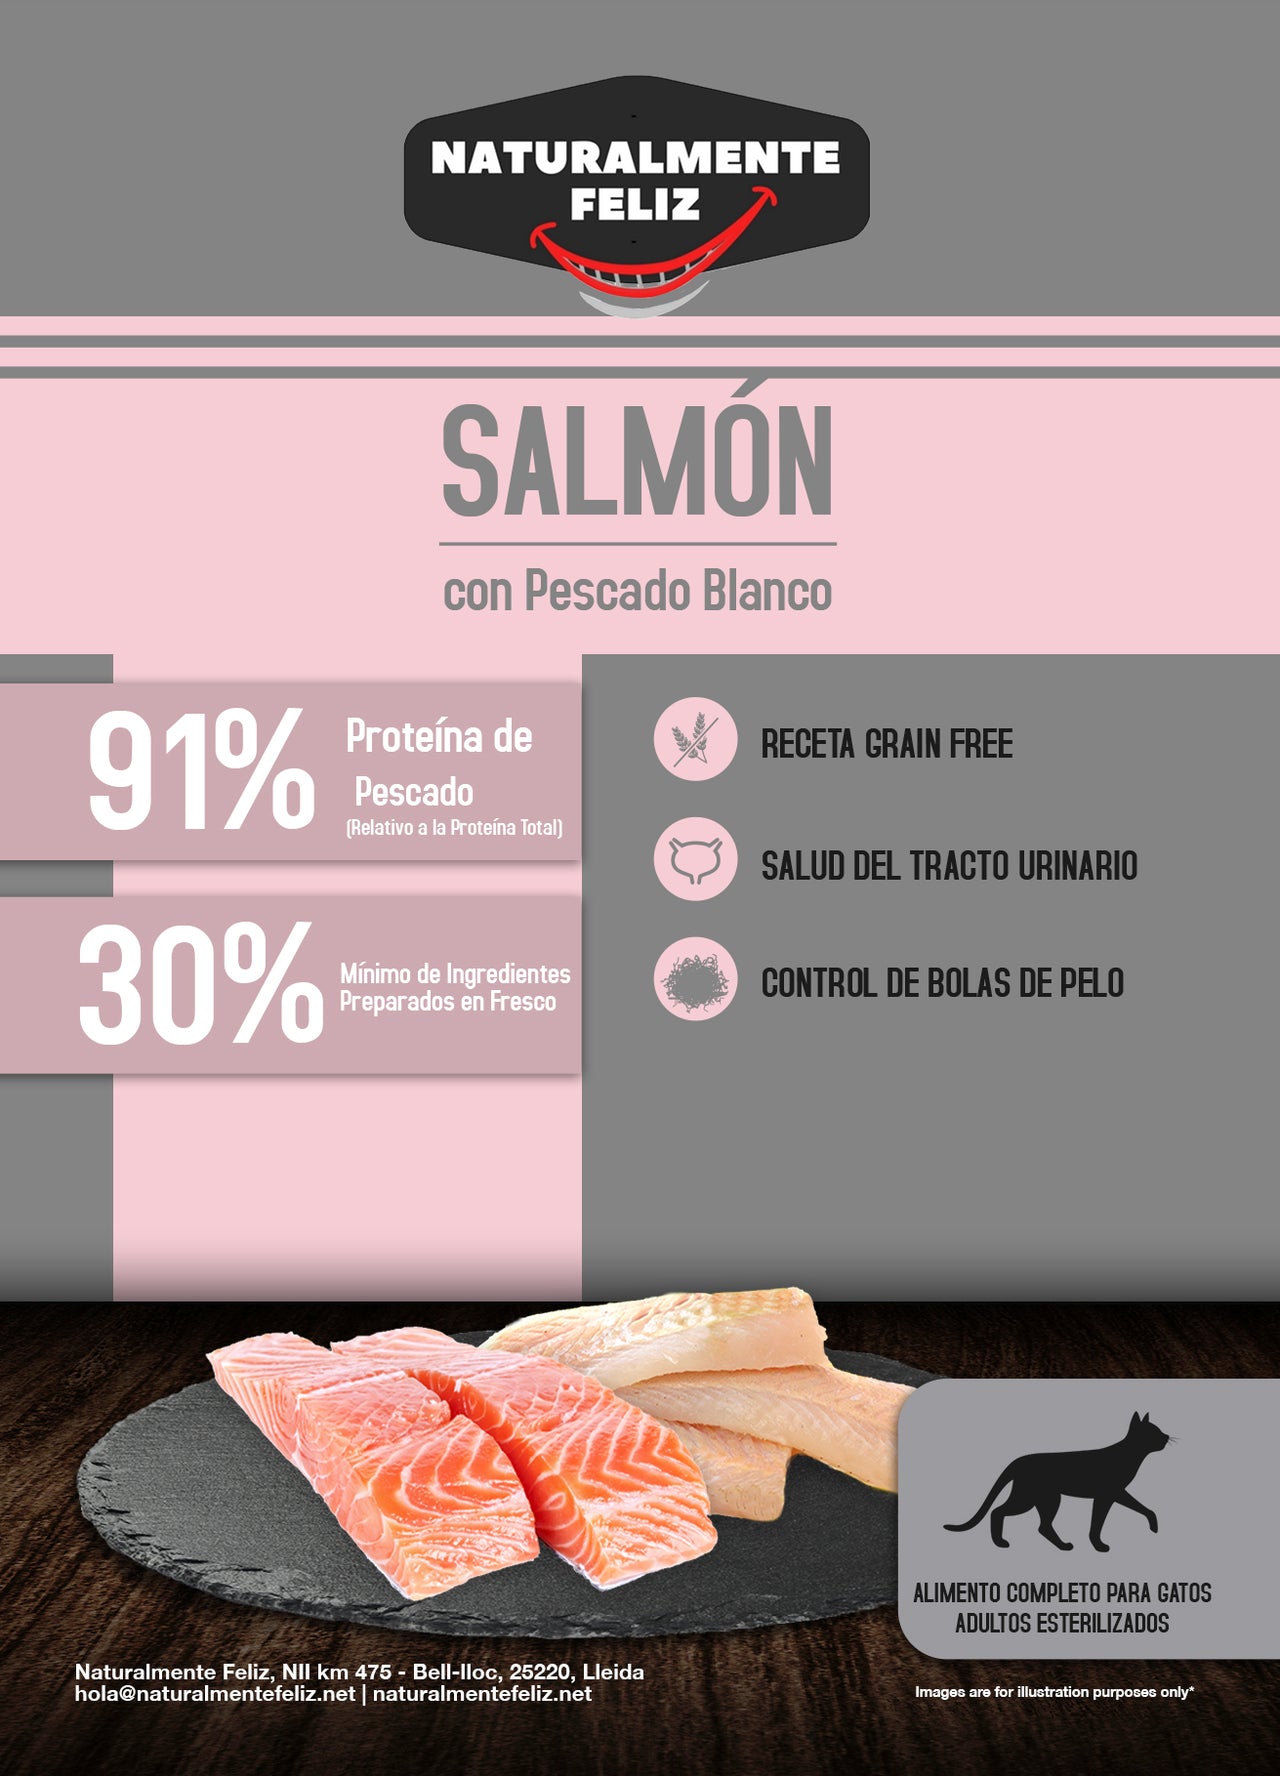 Pienso para gatos de salmón y pescado blanco 100% natural: la mejor opción para el bienestar y la salud de tu gato (1,5kg)